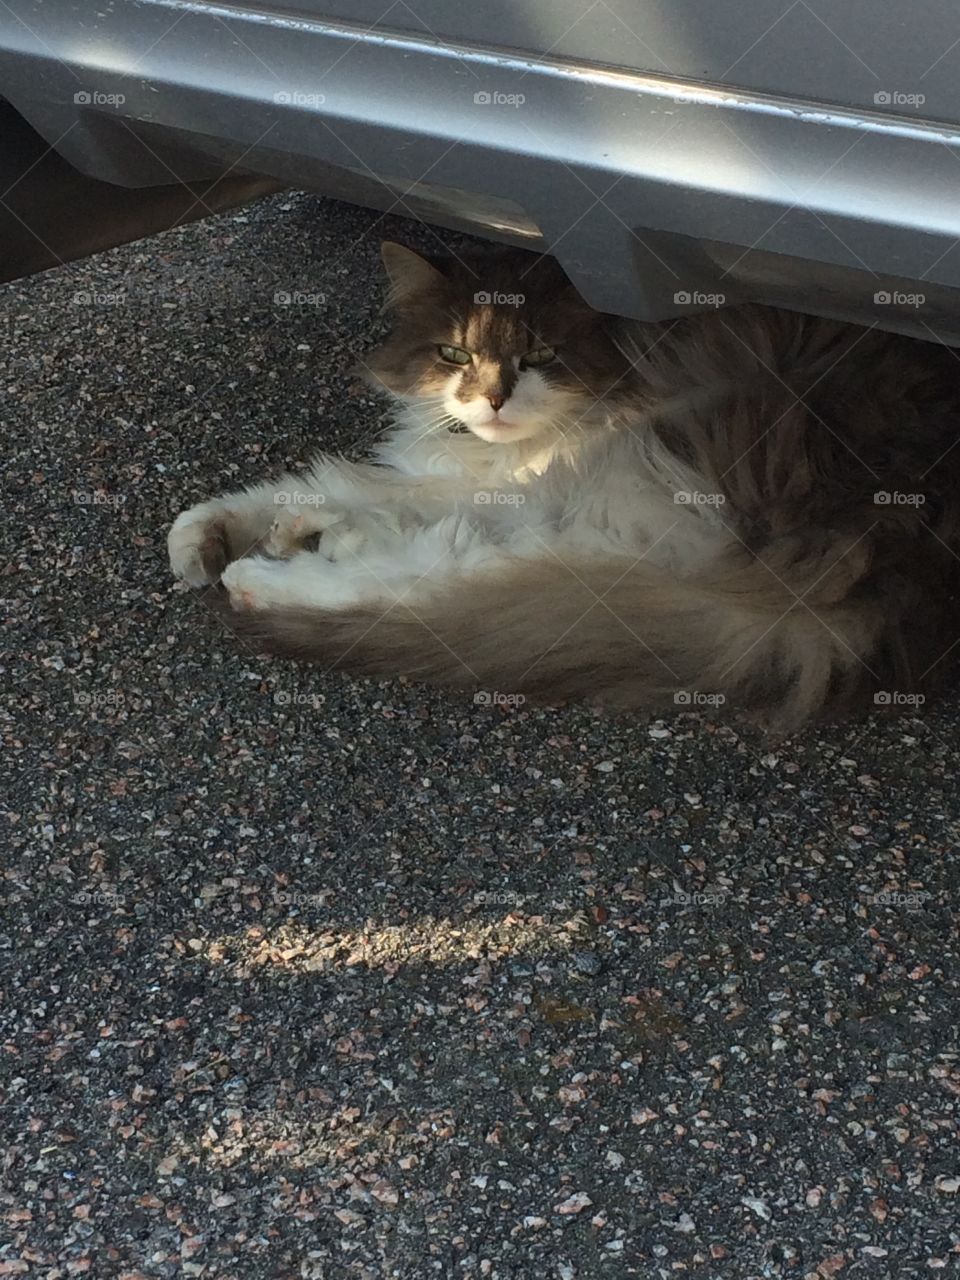 Cat under car